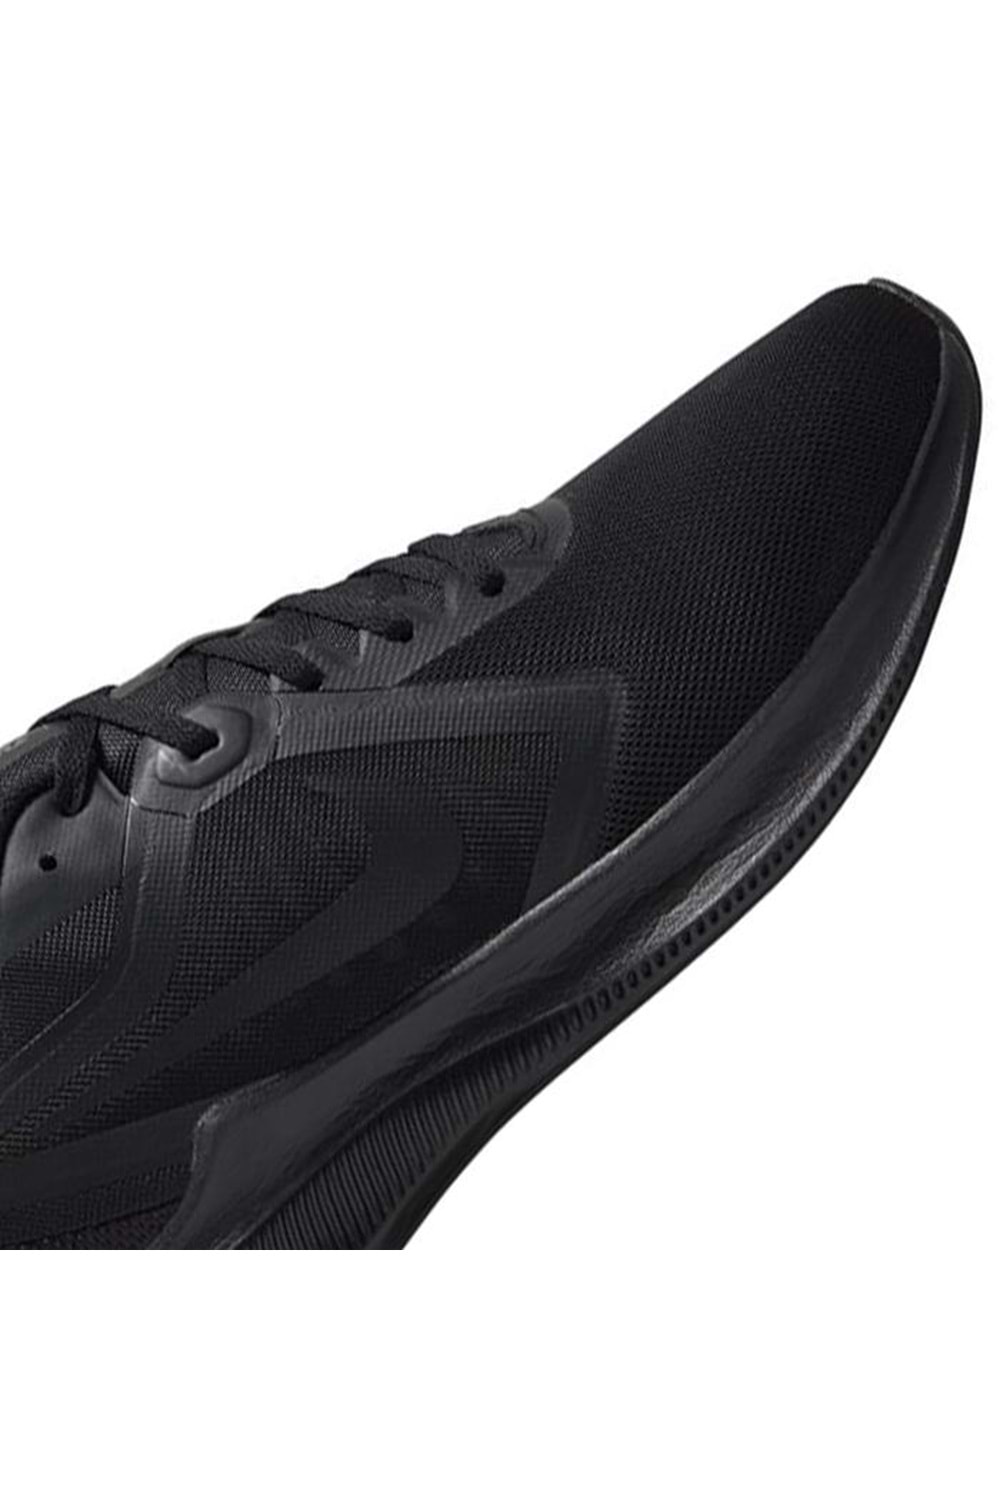 Nike Downshifter 10 Erkek Koşu&Yürüyüş Ayakkabısı CI9981-002